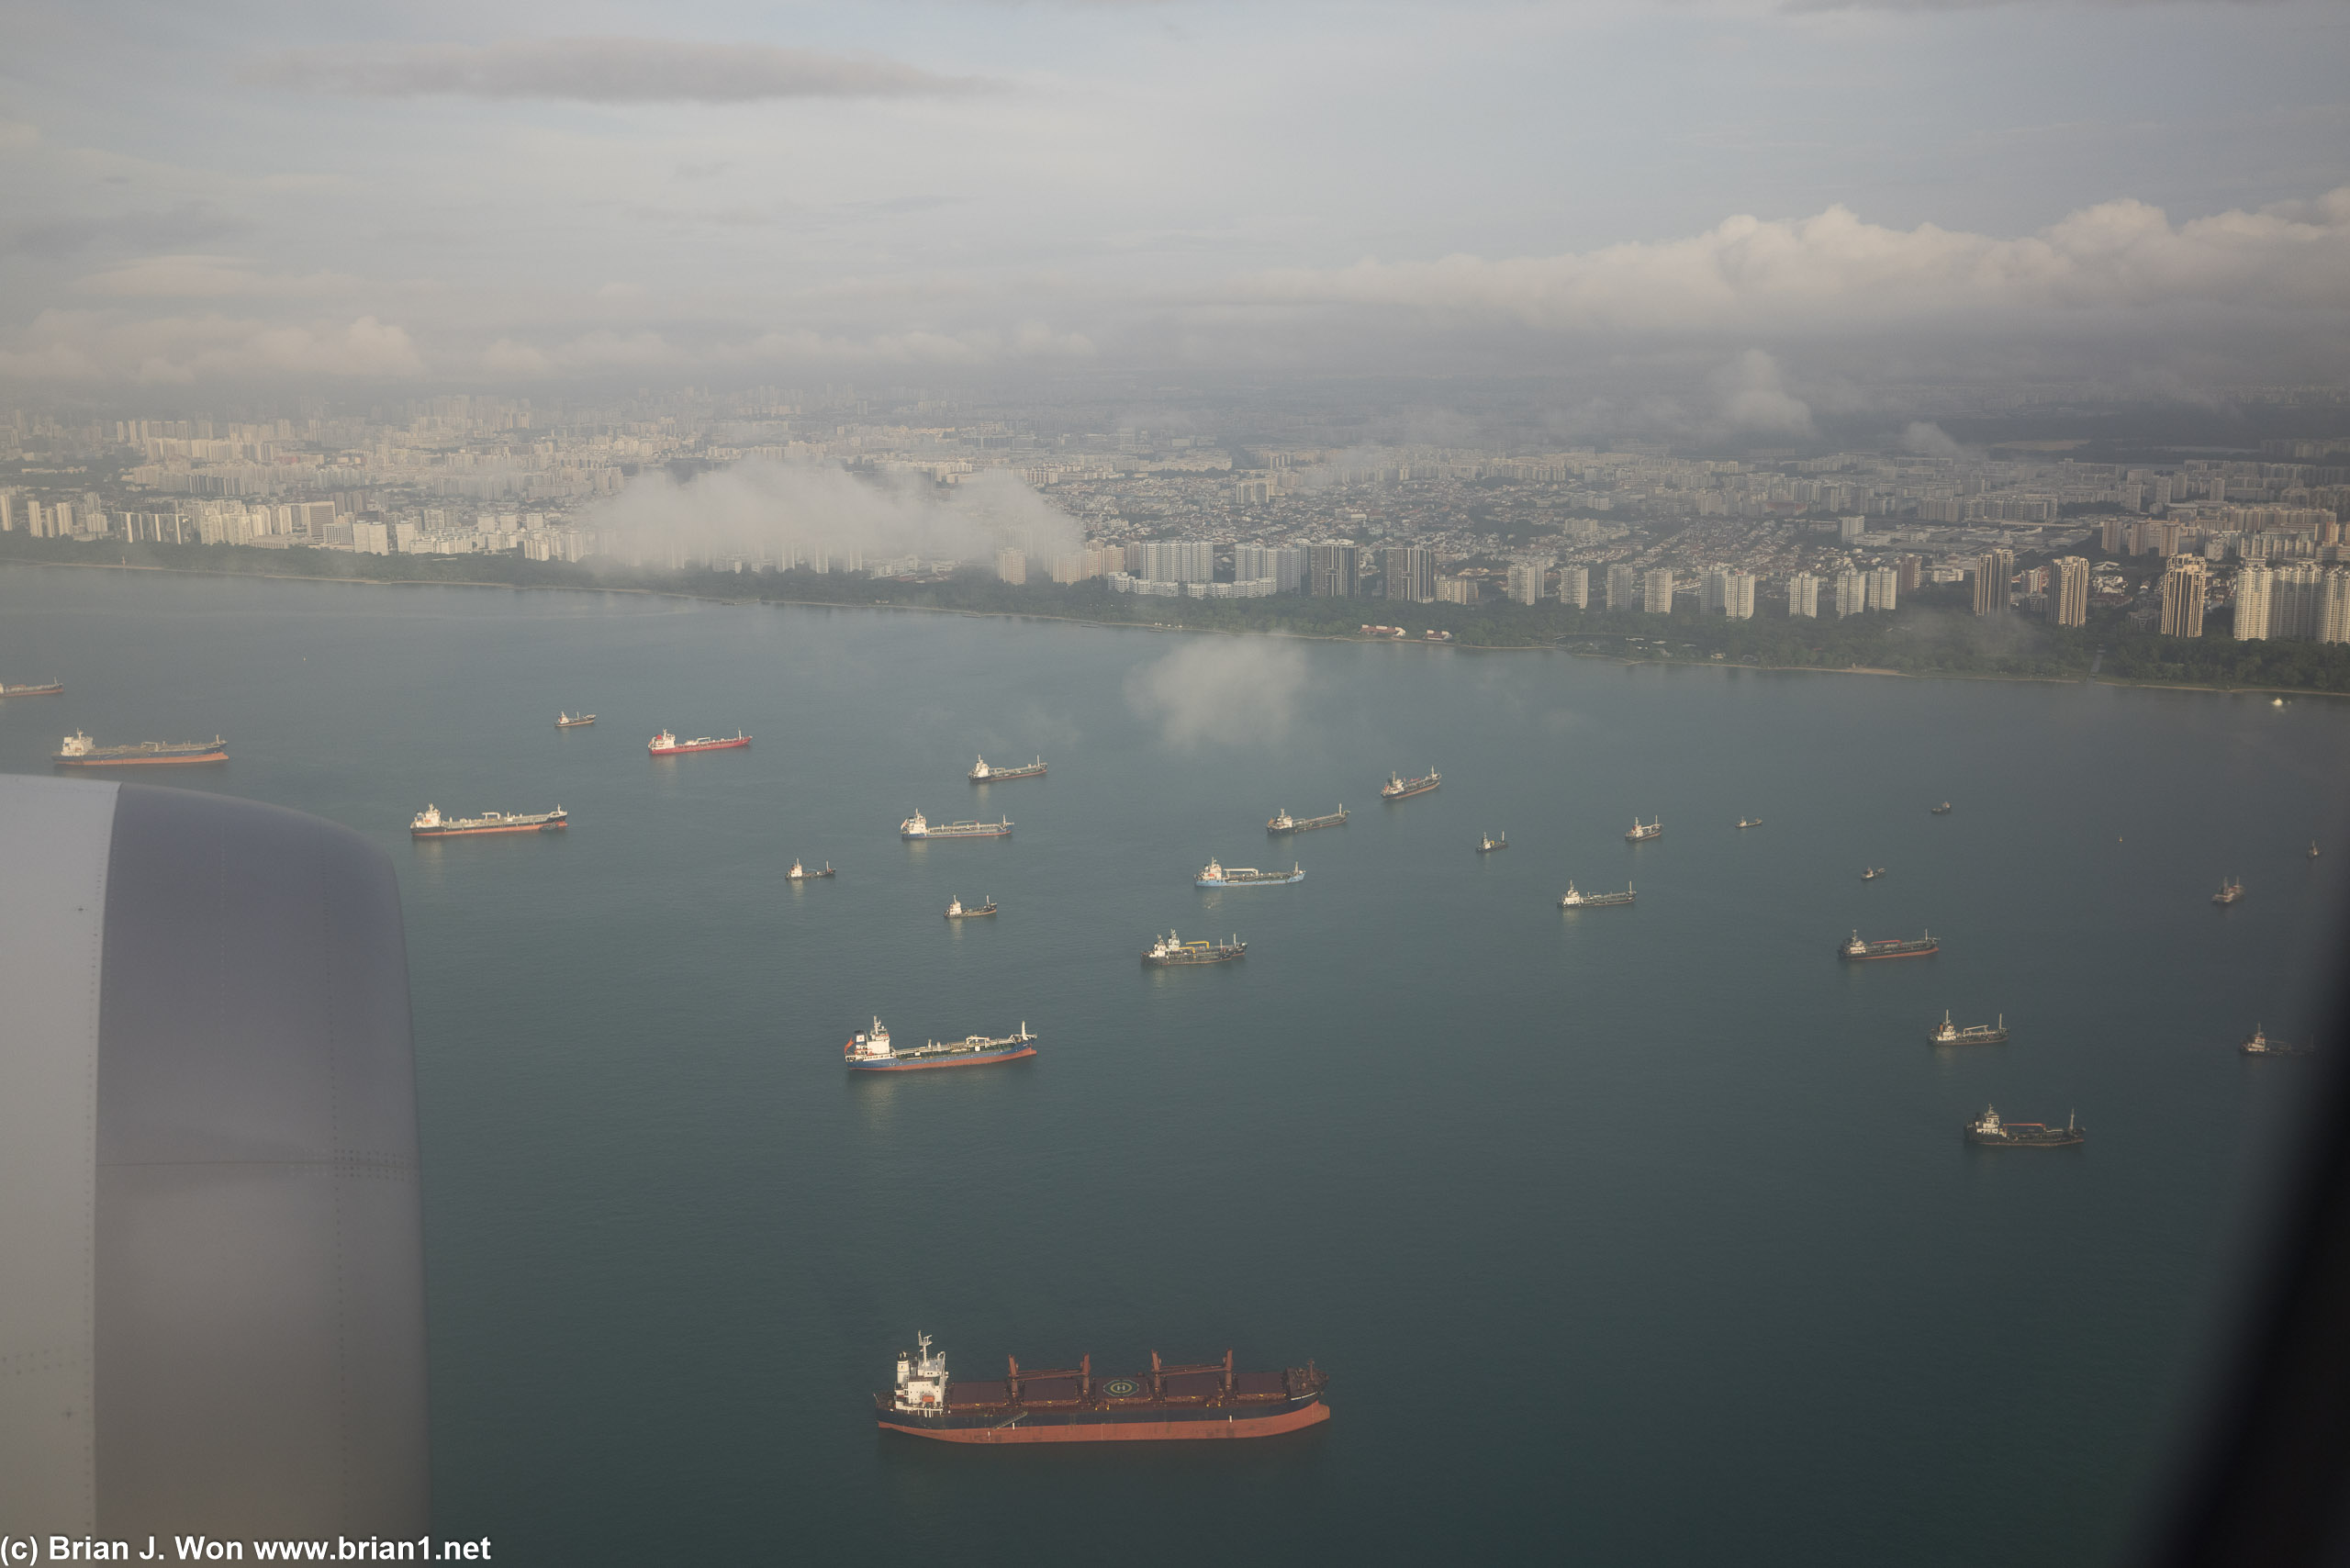 So many cargo ships.